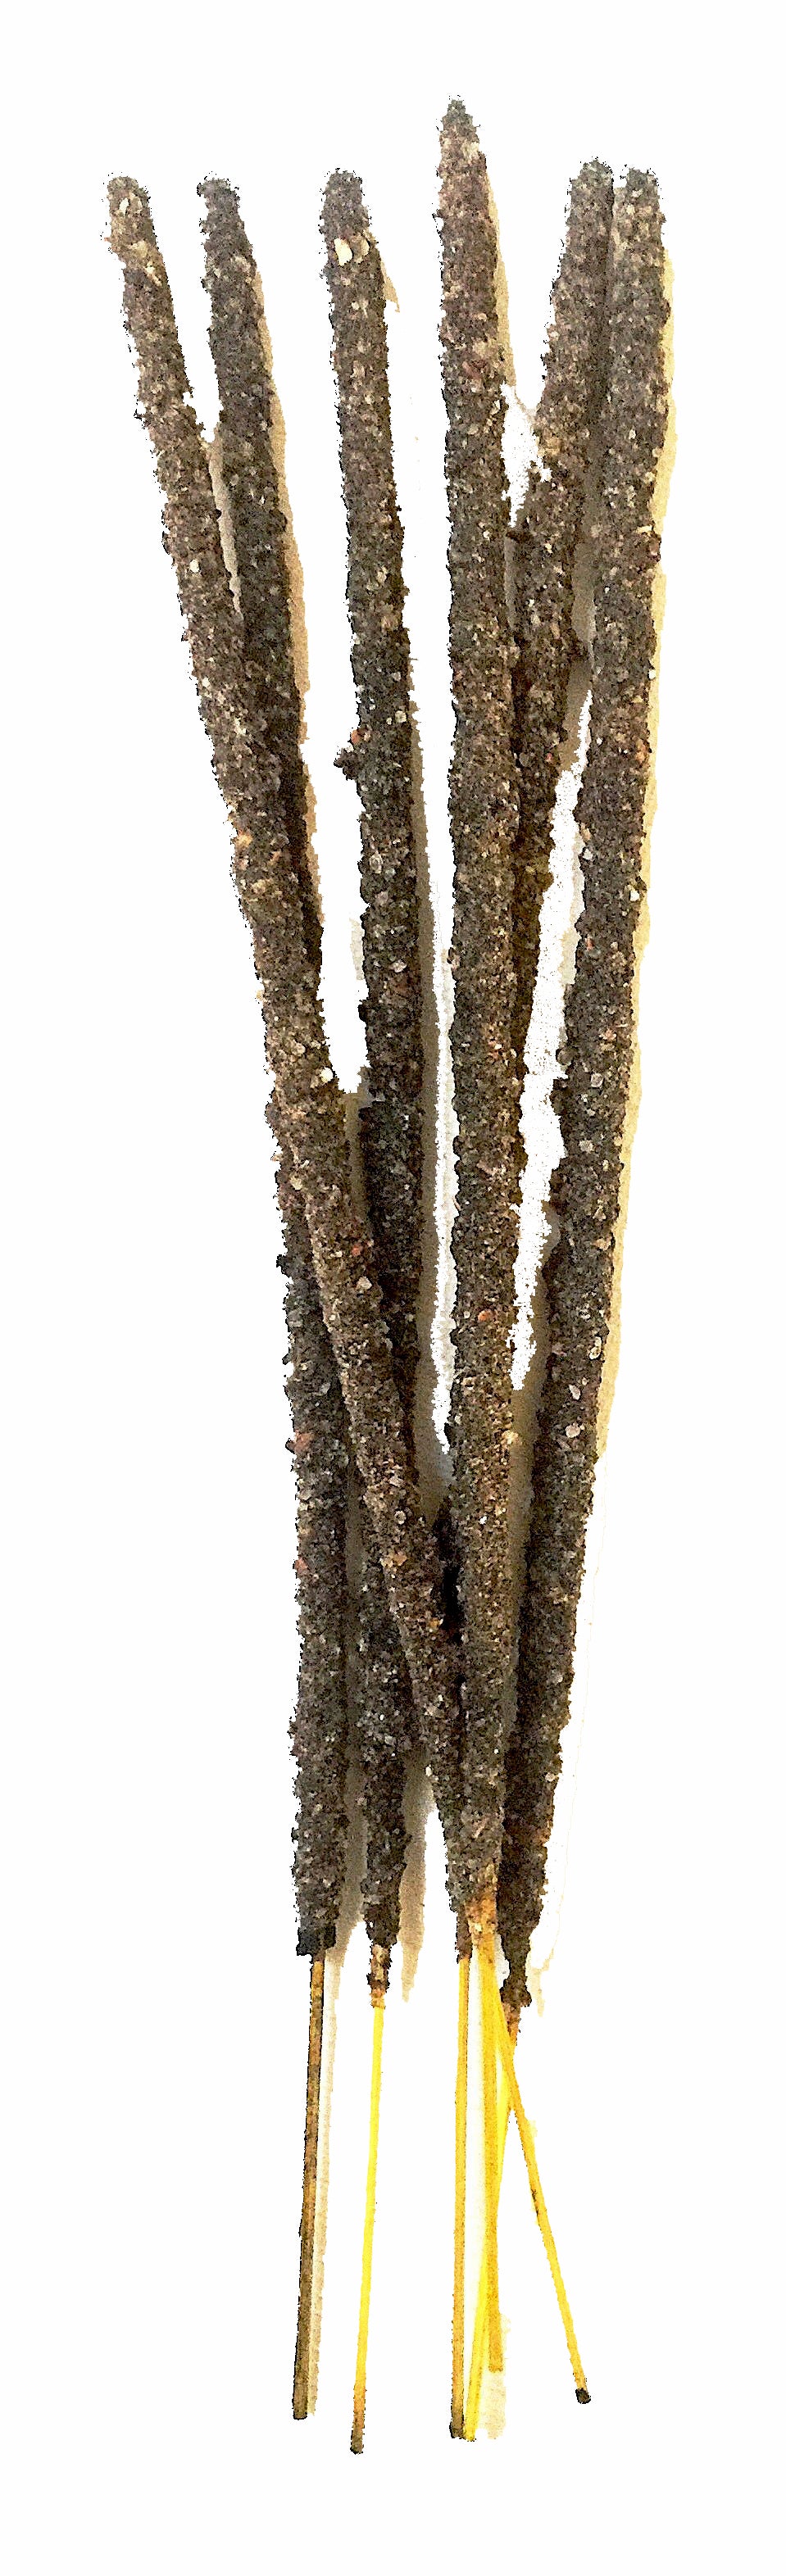 PK/6 - Artisan Incense Sticks - Myrrh Resin - Sacred Smoke